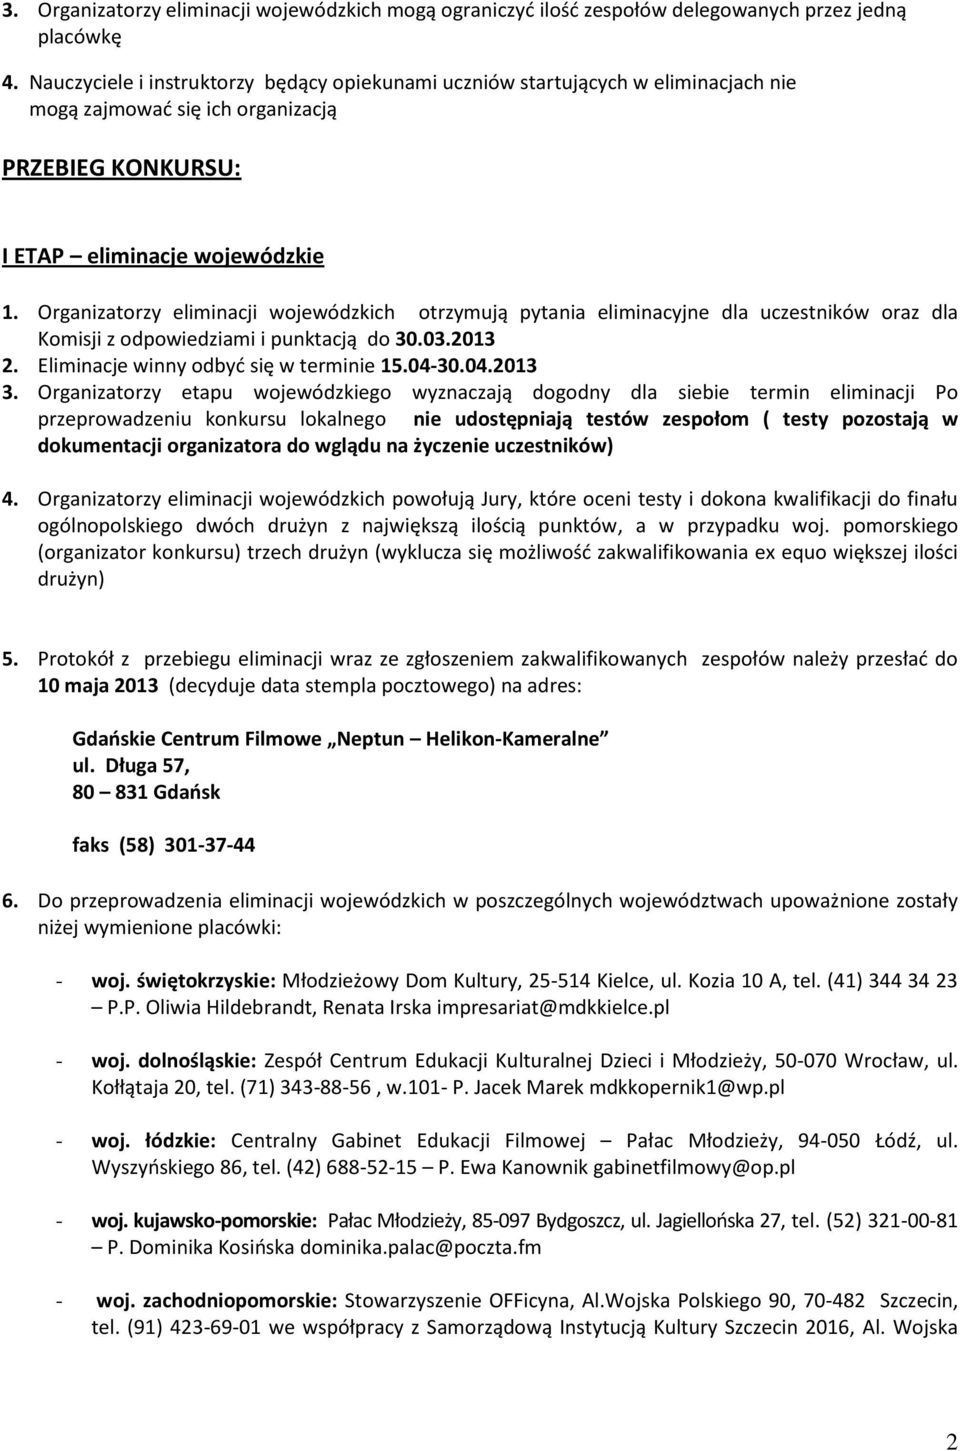 Organizatorzy eliminacji wojewódzkich otrzymują pytania eliminacyjne dla uczestników oraz dla Komisji z odpowiedziami i punktacją do 30.03.2013 2. Eliminacje winny odbyć się w terminie 15.04-30.04.2013 3.